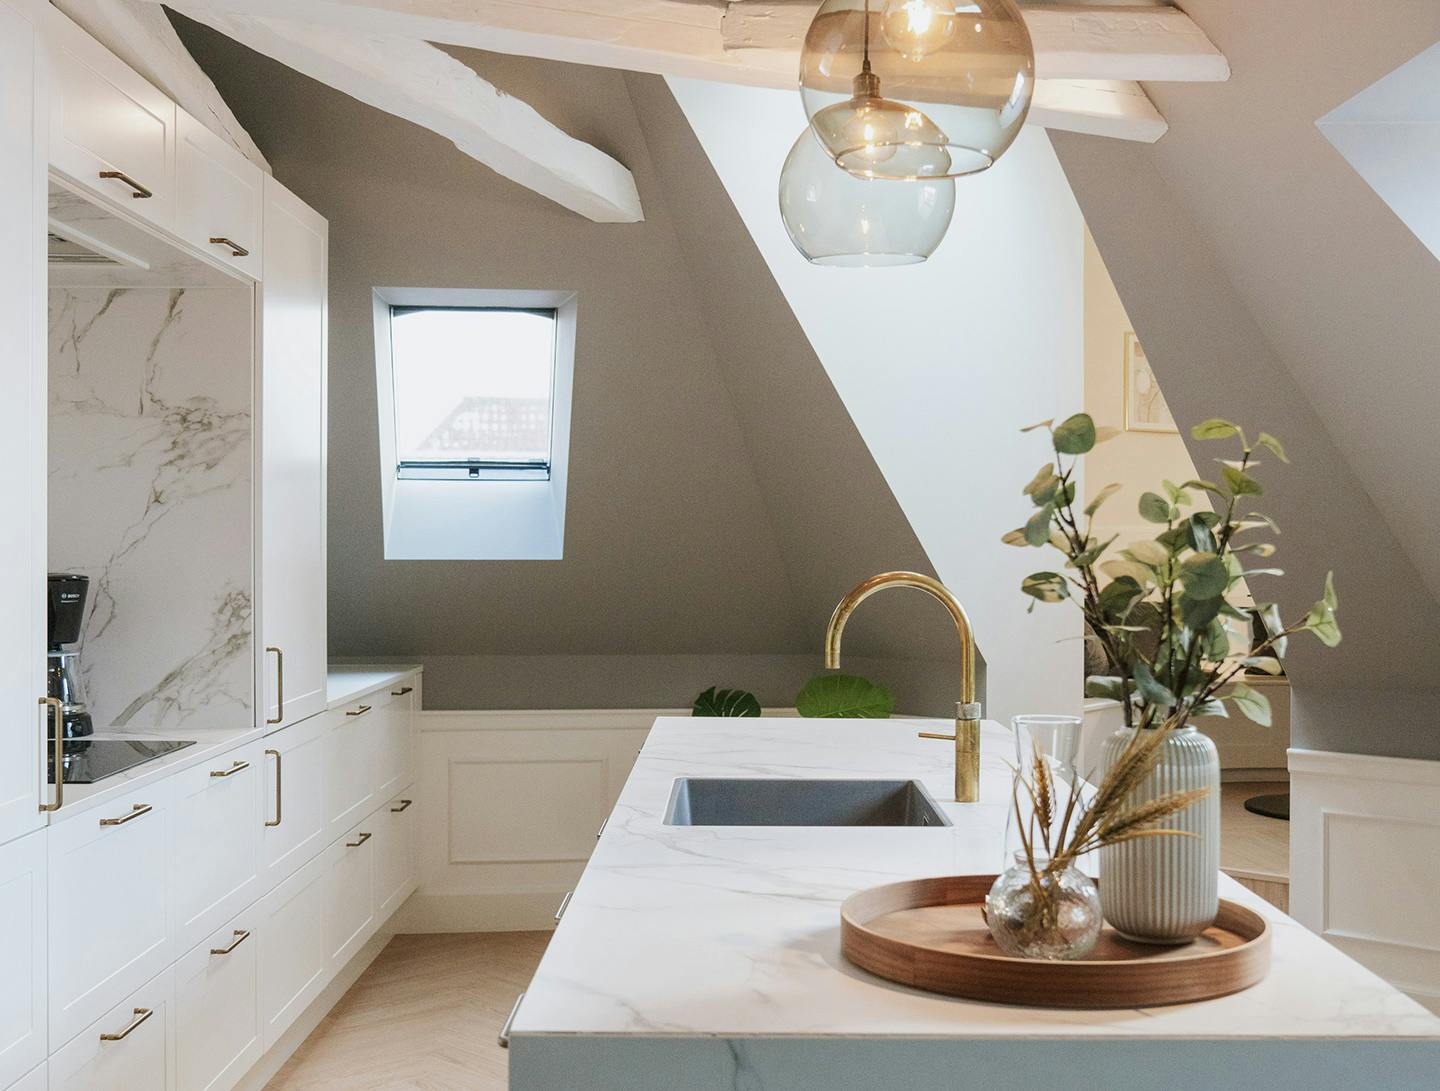 Numéro d'image 38 de la section actuelle de DKTN Arga creates an elegant atmosphere in this open plan kitchen with a minimalist approach de Cosentino France